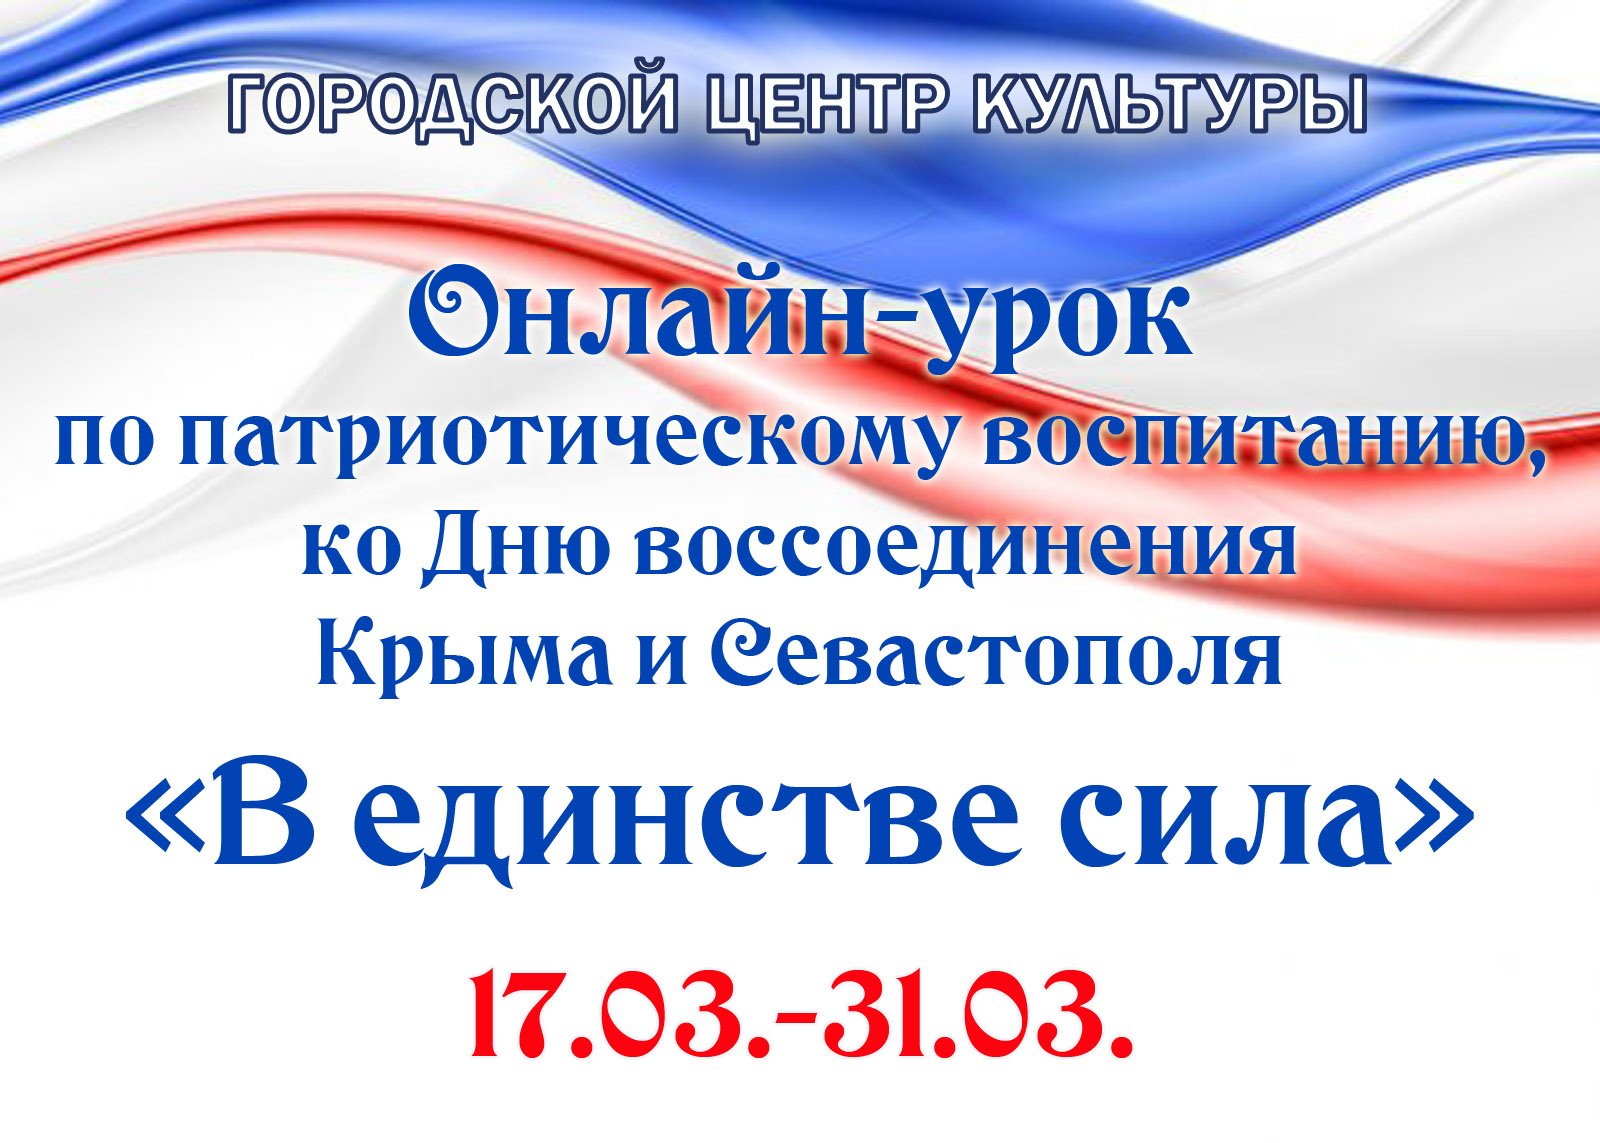 Онлайн-урок "В единстве сила", ко Дню воссоединения Крыма и Севастополя